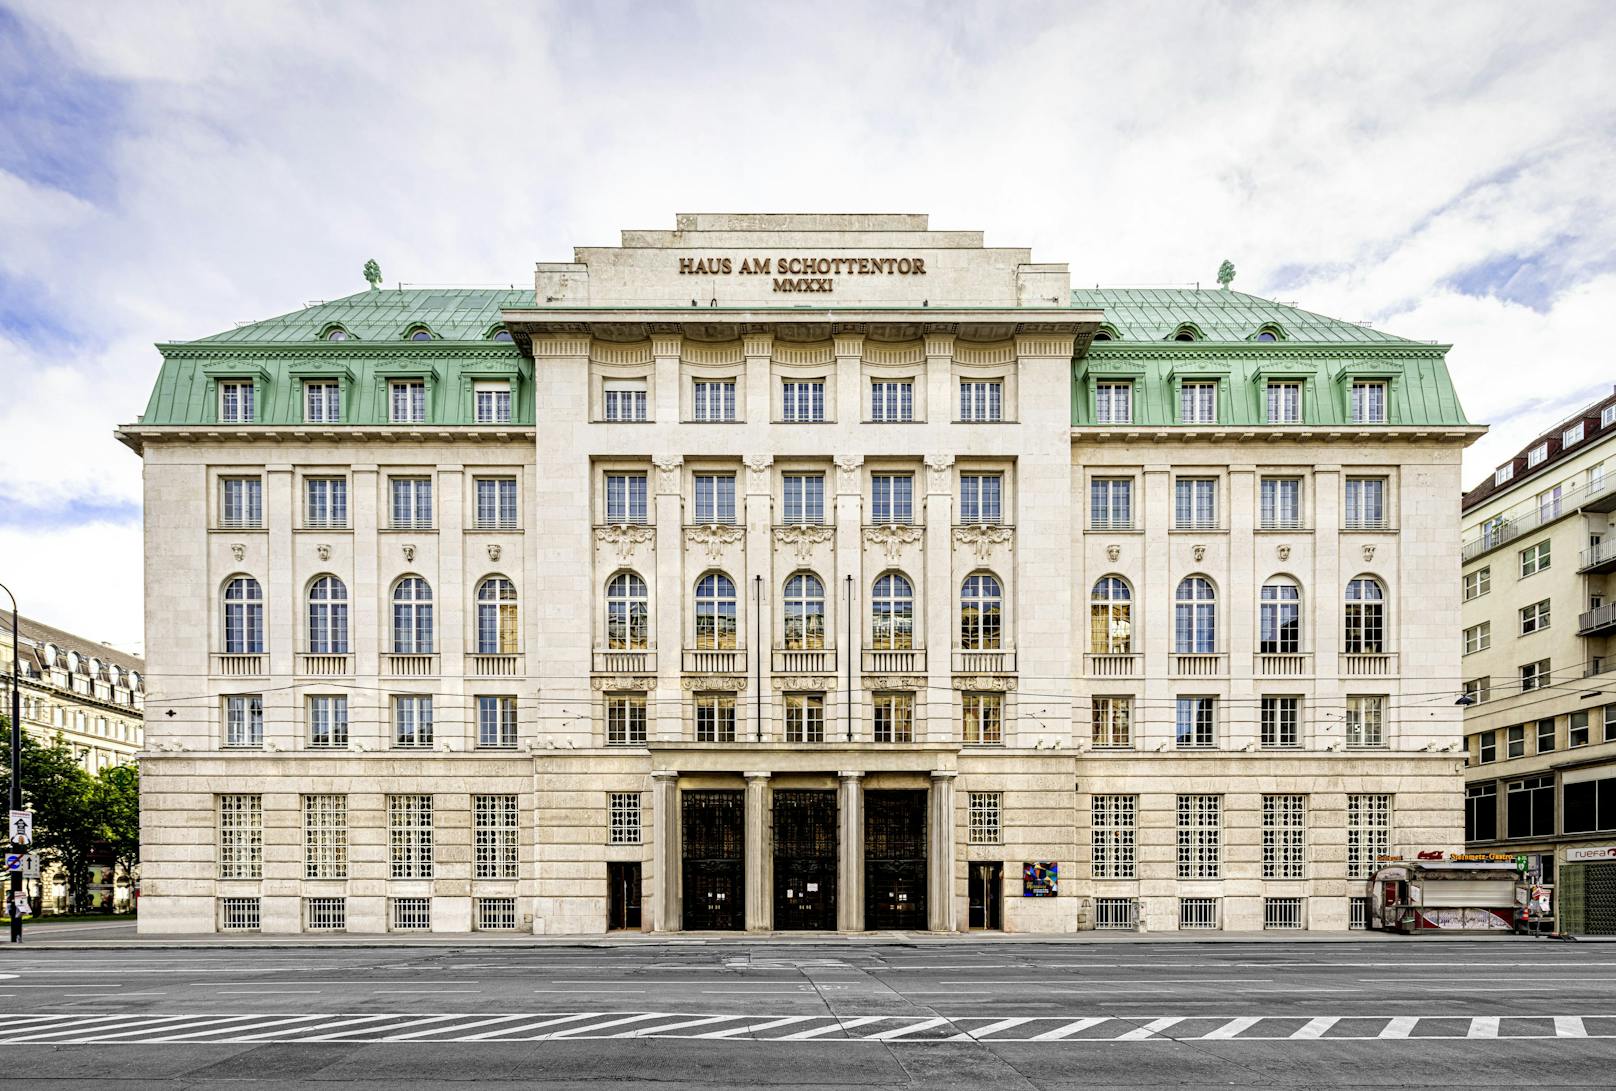 Der Tresor am Schottentor befindet sich in wohl einem der schönsten Häuser Wiens - im prestigeträchtigen "Haus am Schottentor" in der Inneren Stadt.